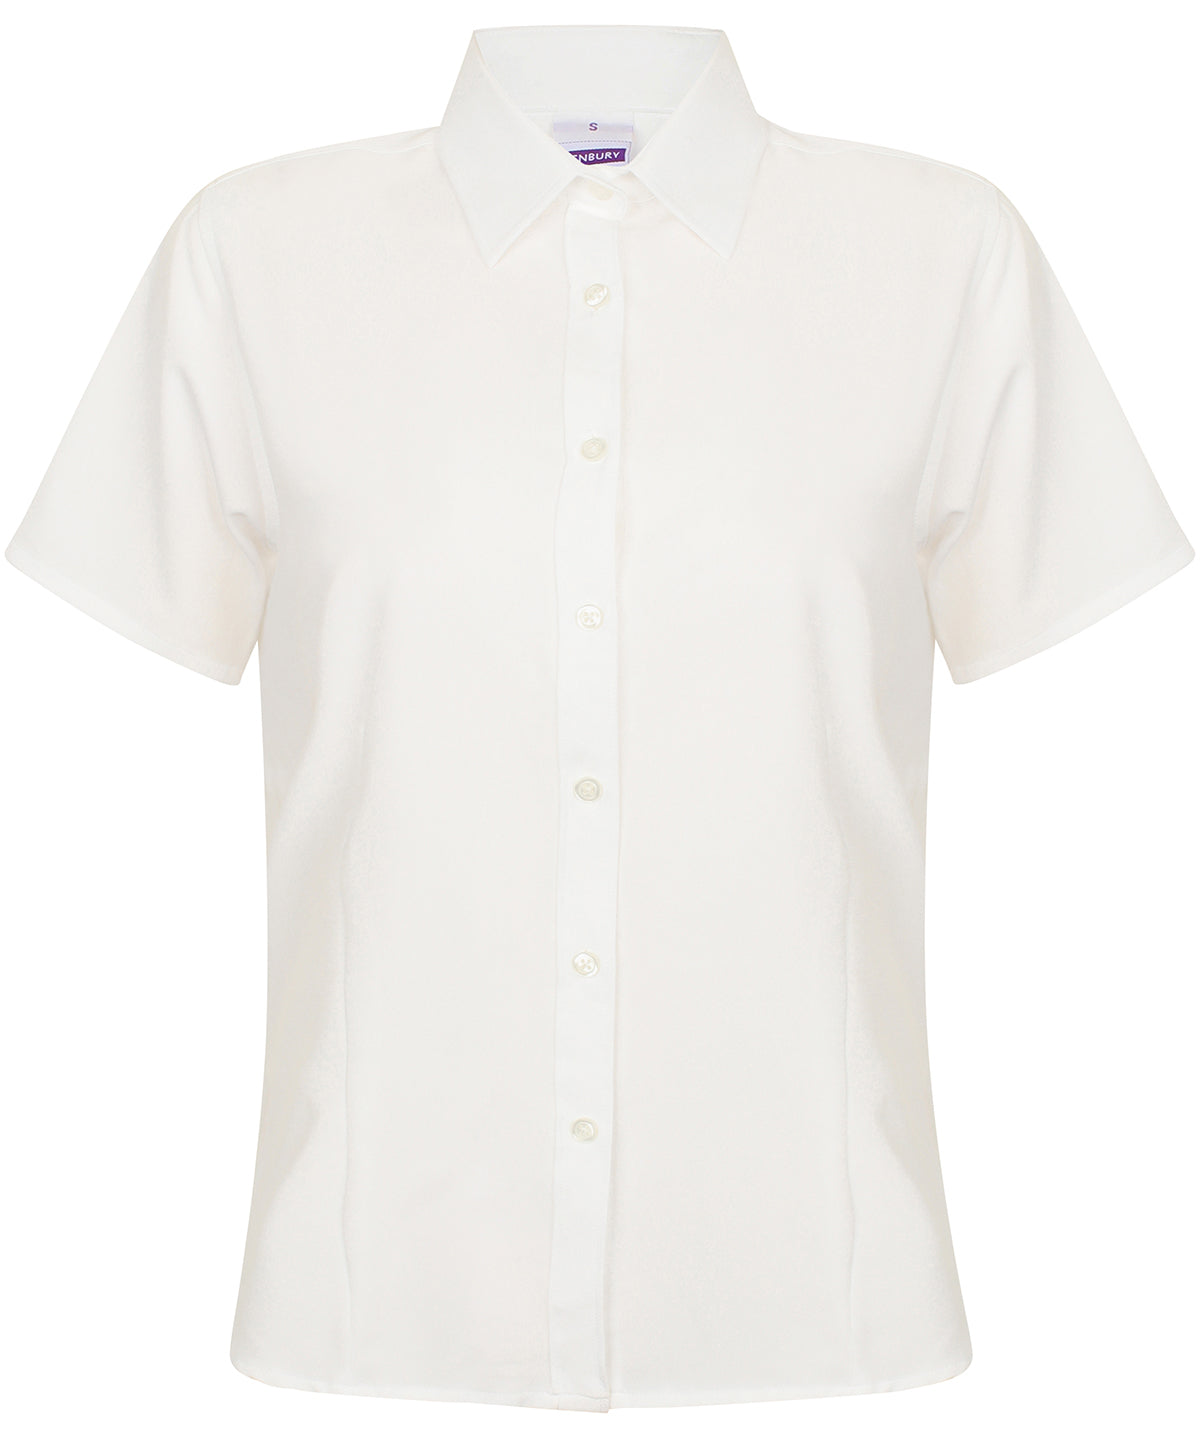 Henbury Women's wicking antibacterial short sleeve shirt